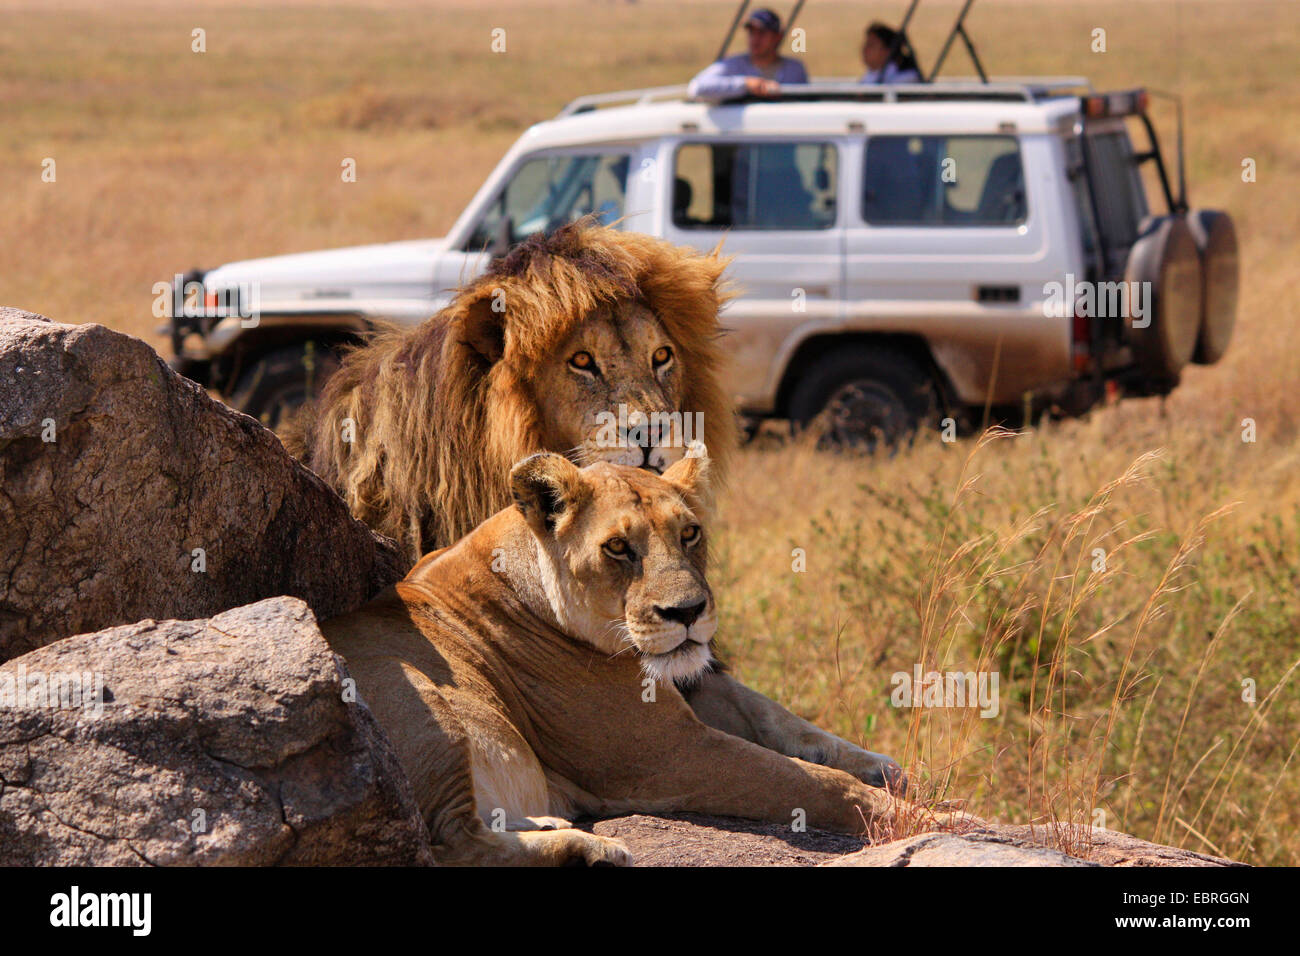 Lion (Panthera leo), couple lion sur les roches dans la savane, regardant par un groupe safari, Tanzanie, Serengeti National Park Banque D'Images